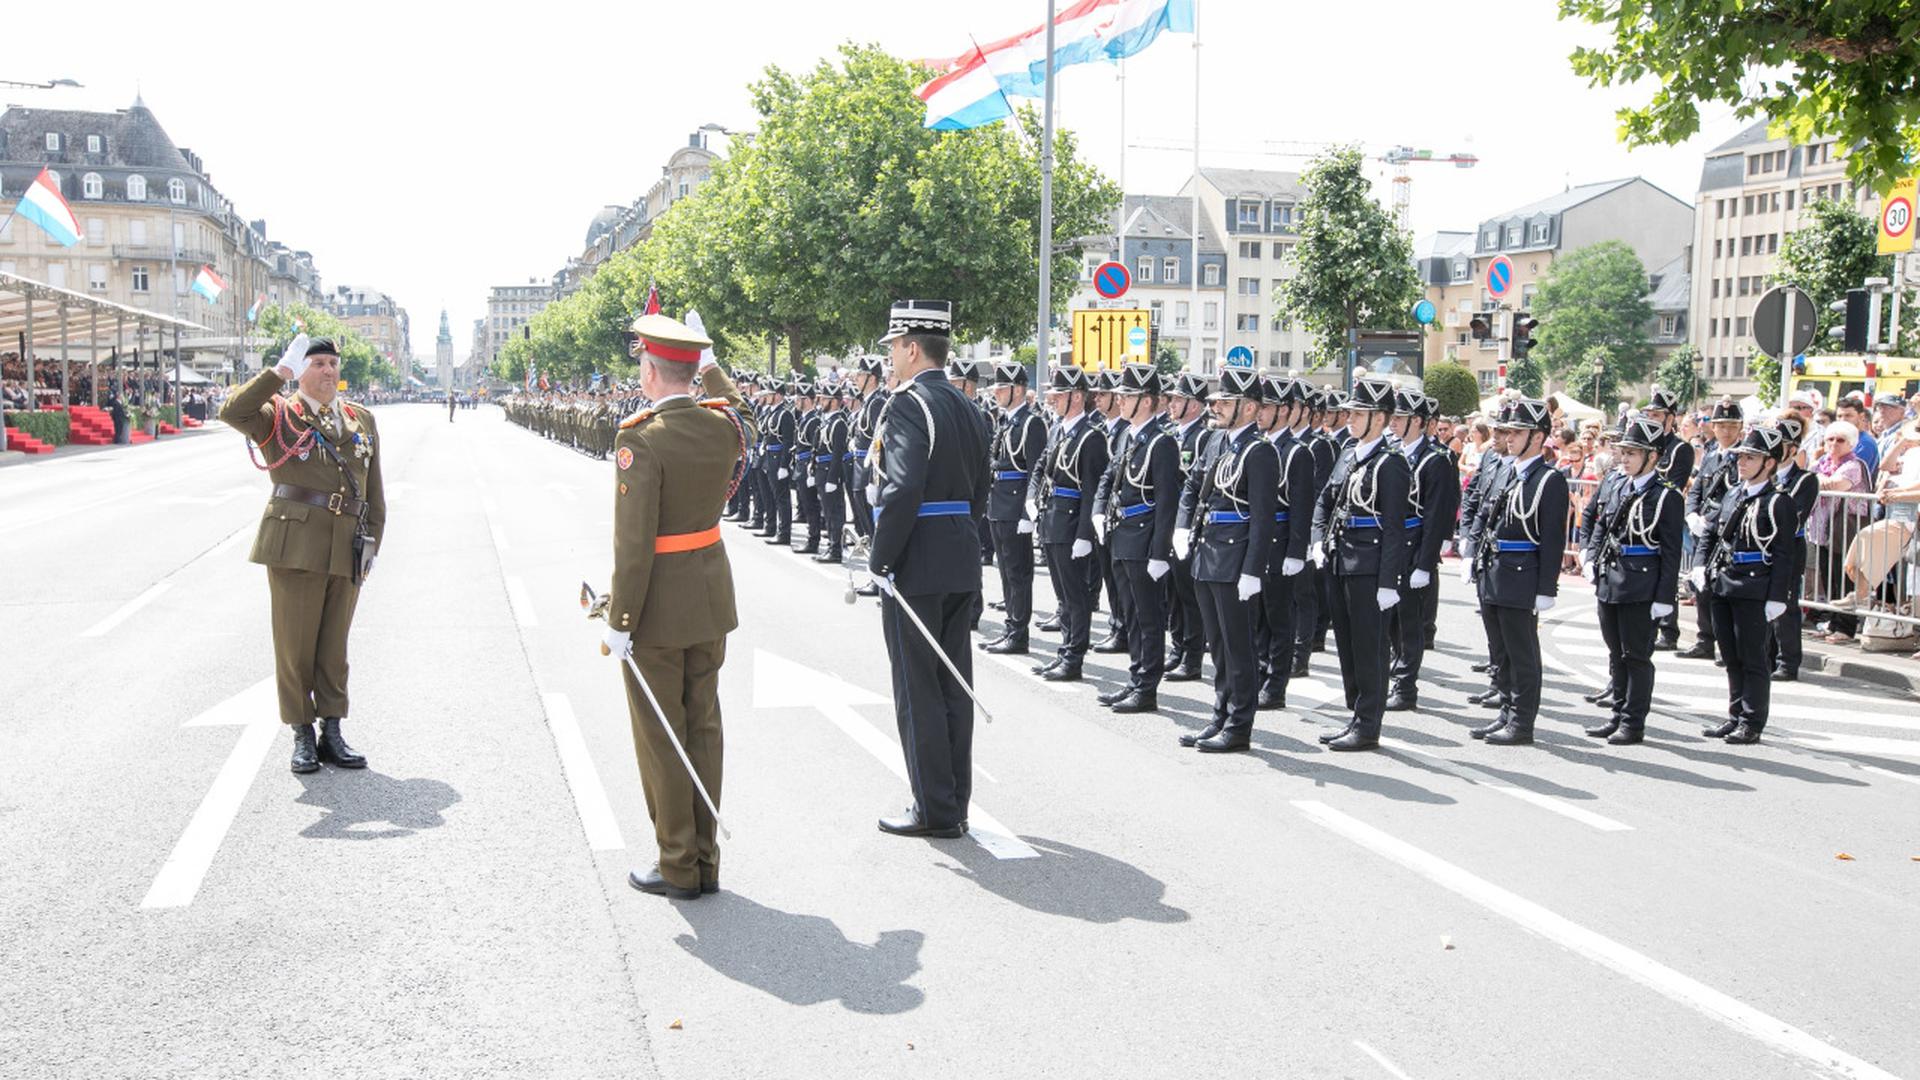 Nationalfeierdag 2017 / Parade / Luxembourg / Photo: Blum Laurent